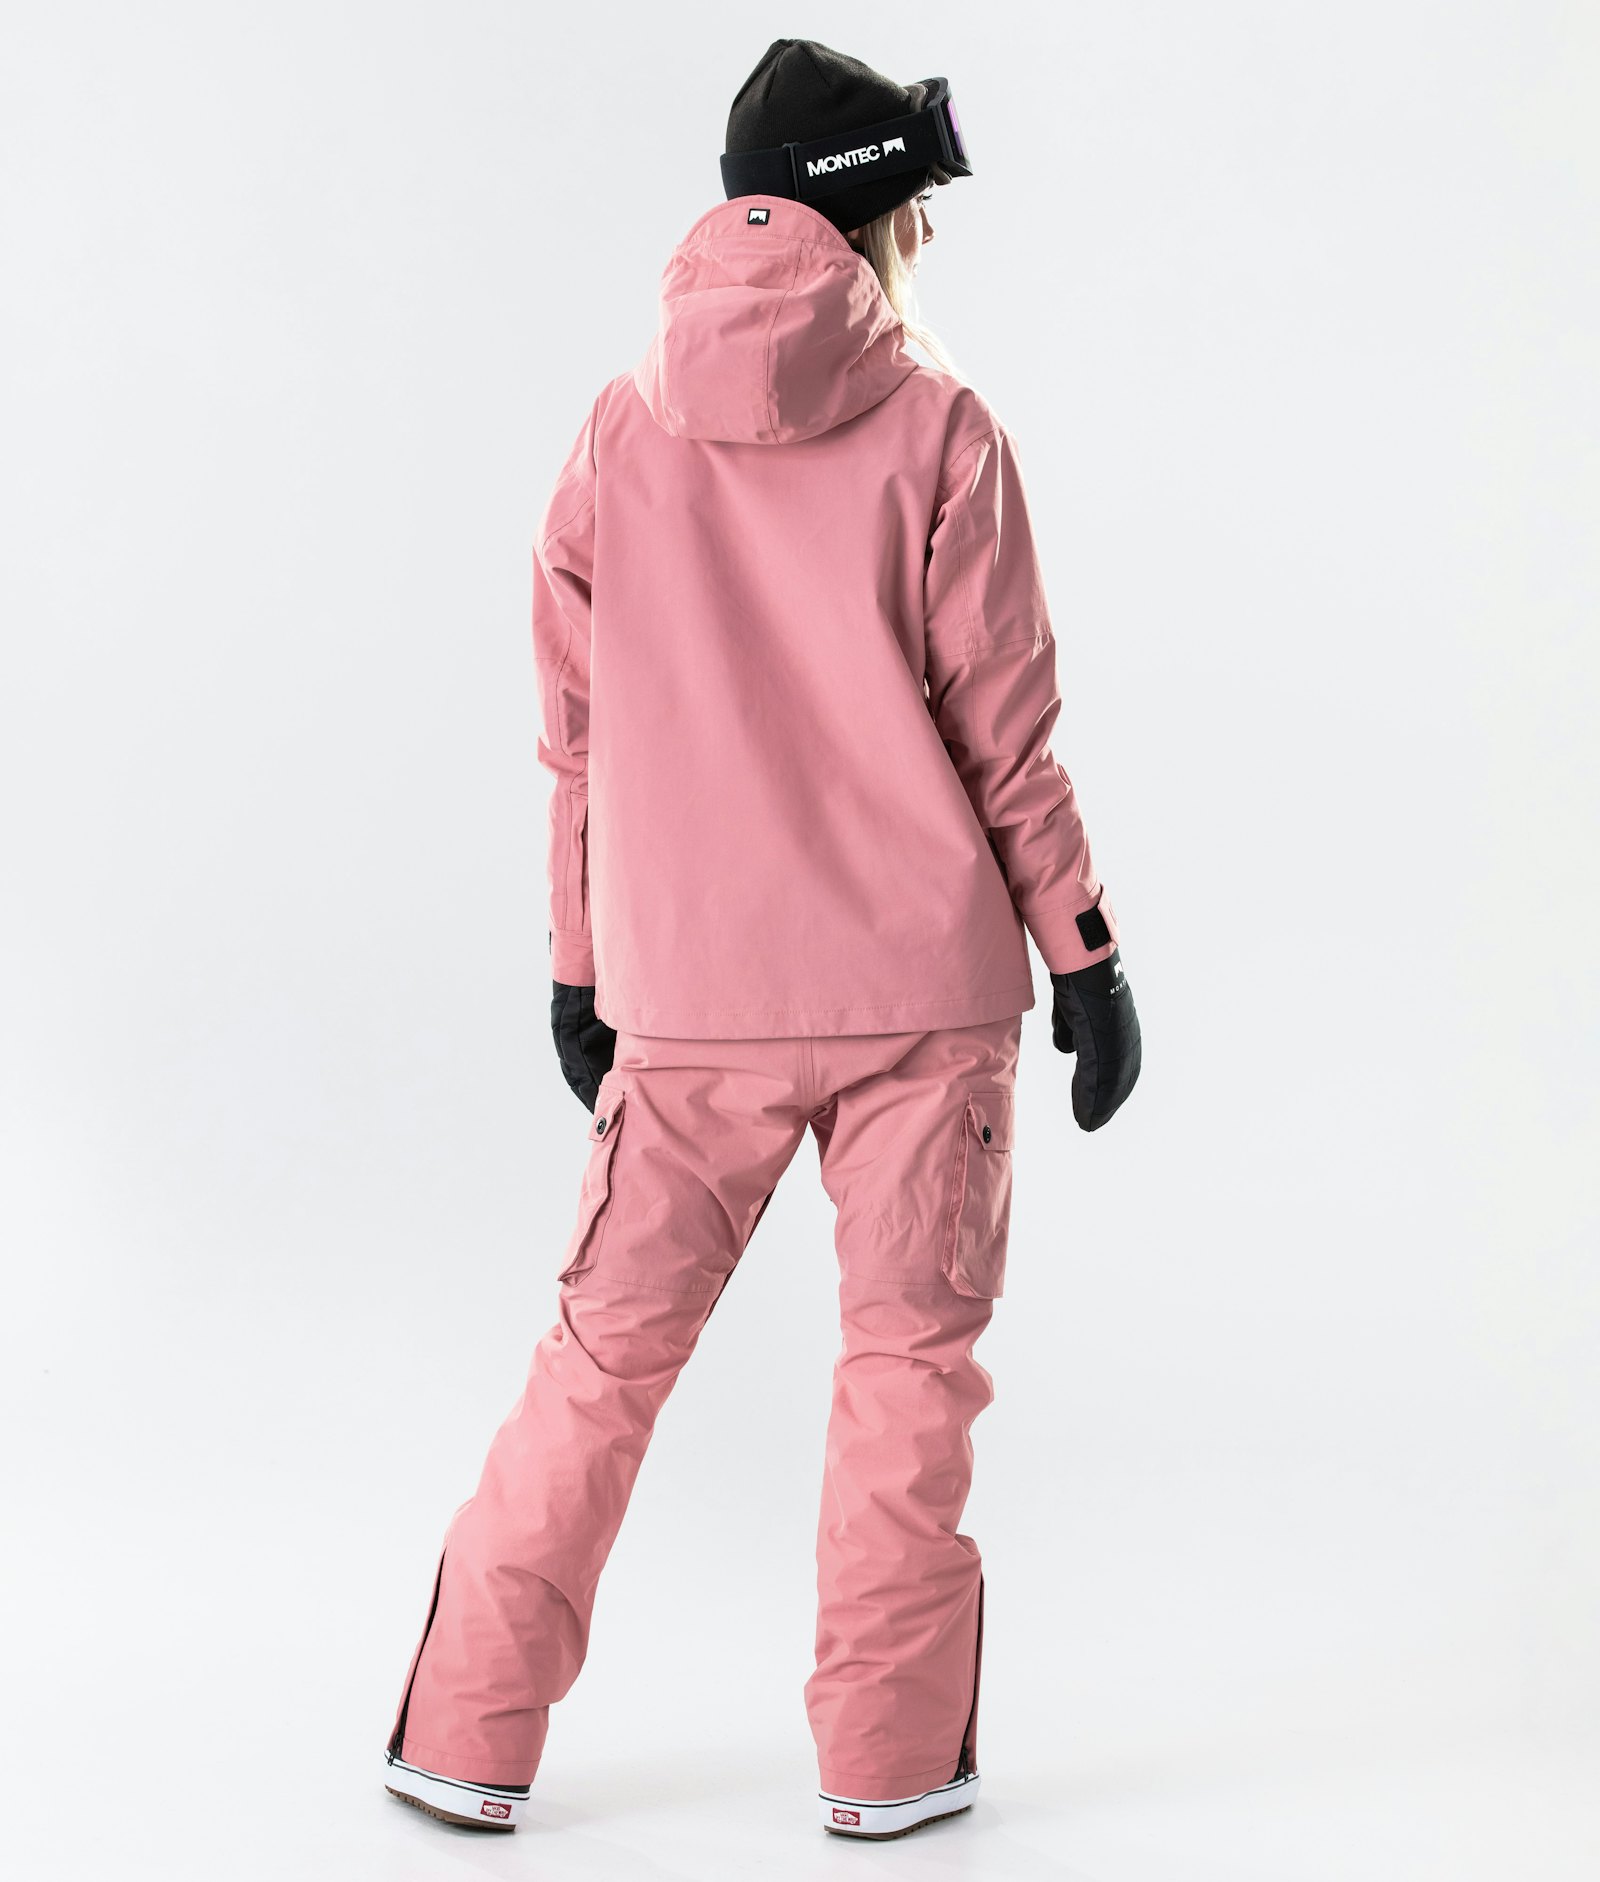 Typhoon W 2020 Snowboardjakke Dame Pink